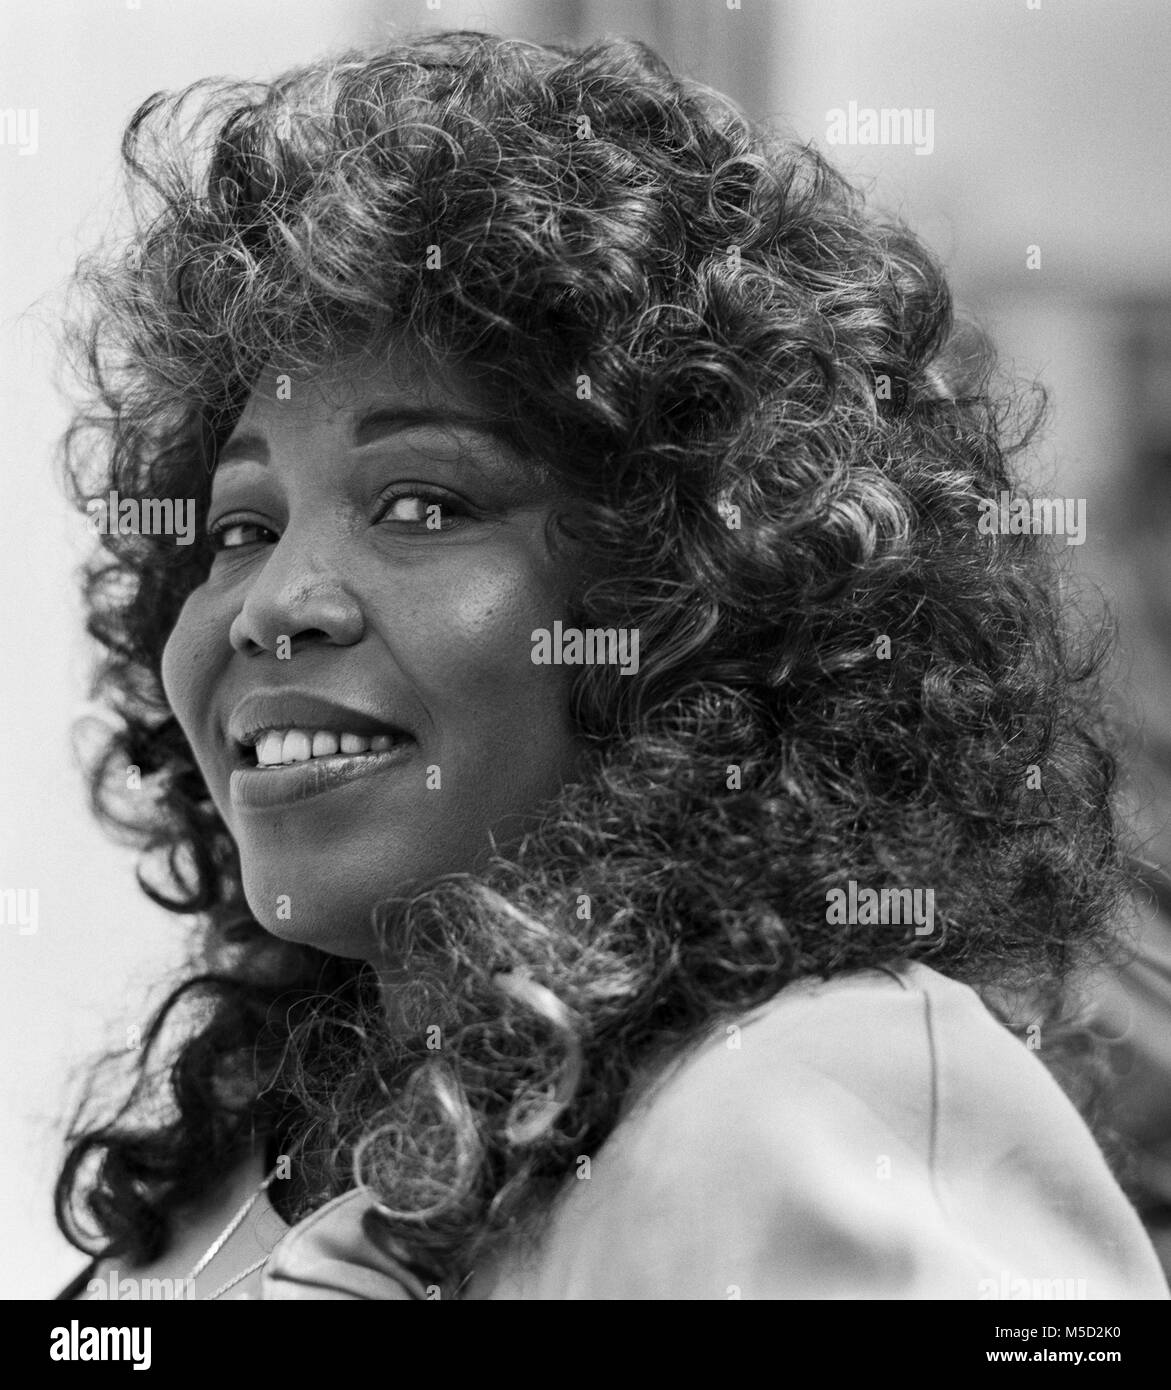 Denise LaSalle, Ora Denise Allen (16 juillet 1939 - 8 janvier 2018), connu sous le nom de scène de Denise LaSalle, est un blues et R&B/soul singer, auteur-compositeur et producteur de disques, la Reine du Blues, d'archives photo faite le 8 juillet 1989 Banque D'Images